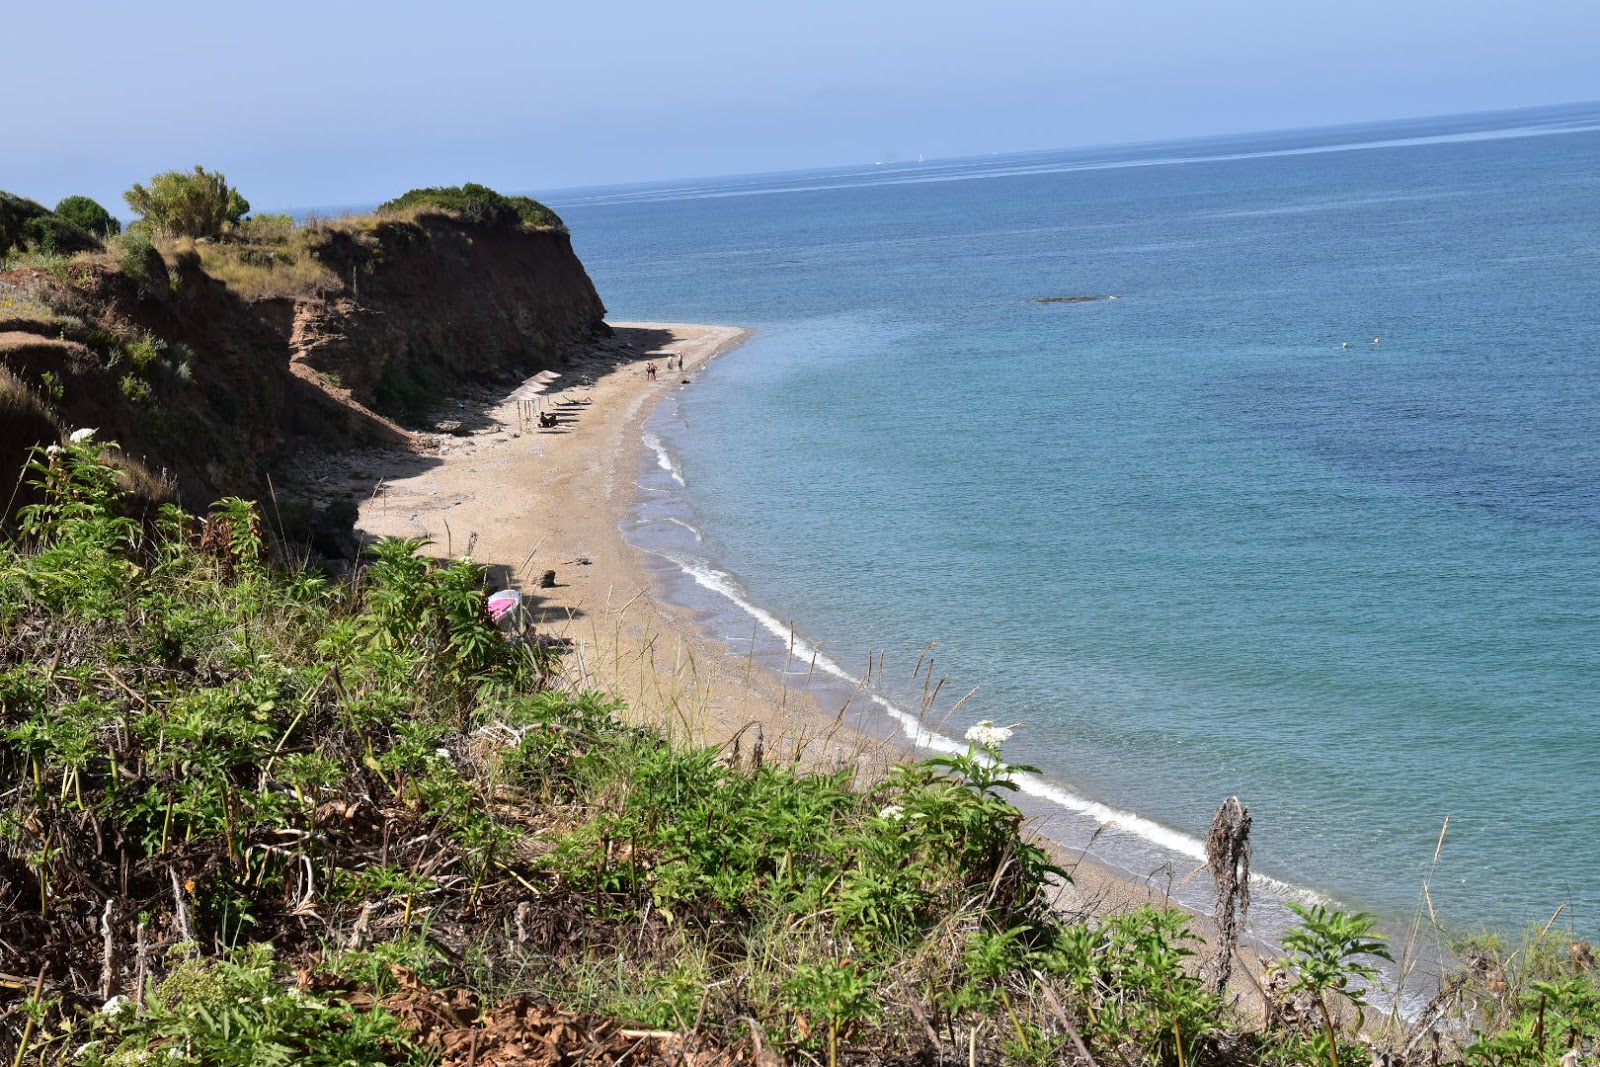 Faros beach'in fotoğrafı kahverengi kum yüzey ile